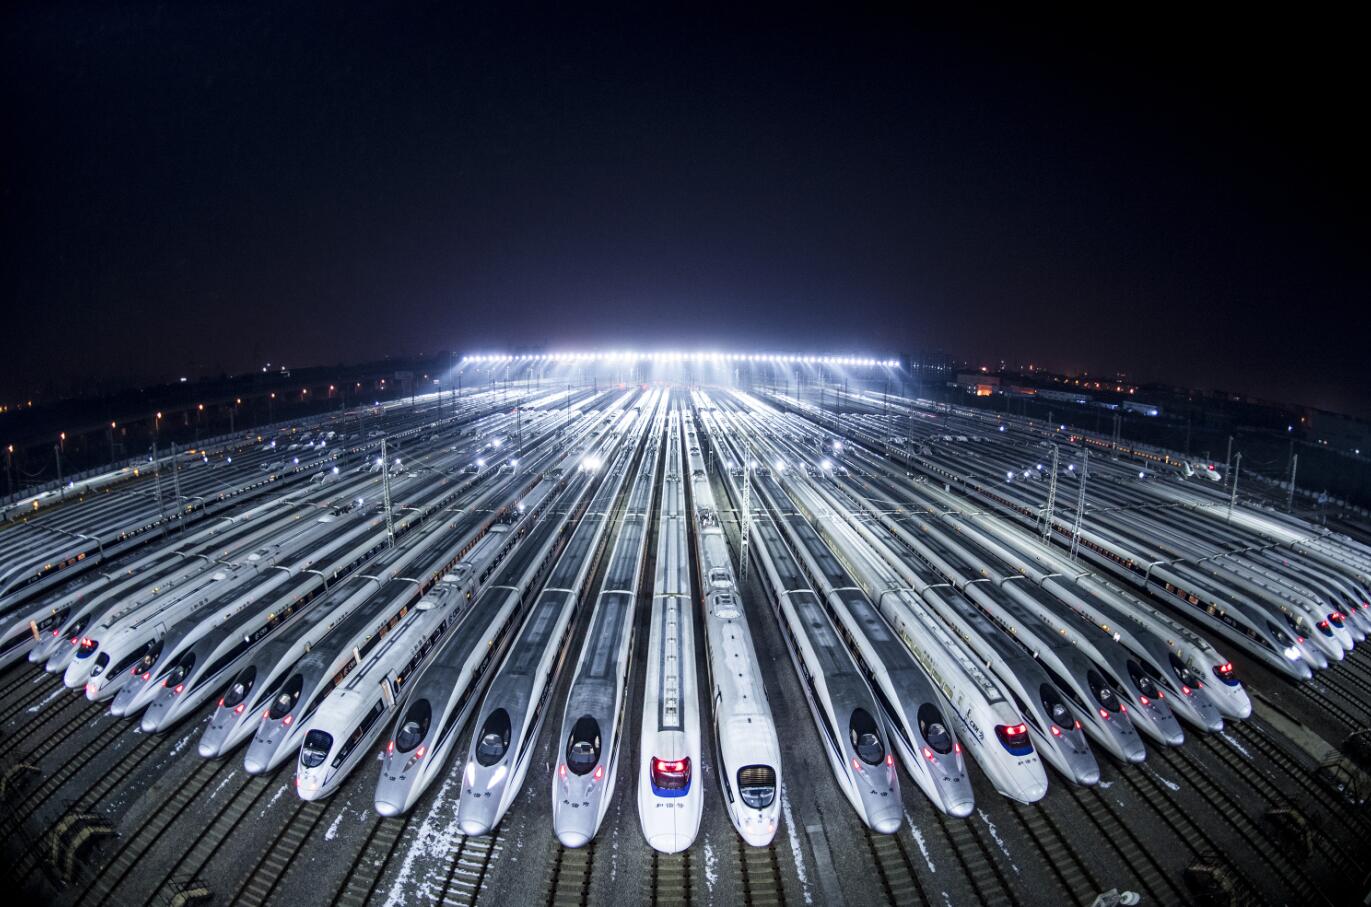 2018年2月1日凌晨A動車組列車停靠在武漢動車段的存車線上A準備進行檢修和保溫作業C新華社記者 肖藝九 攝